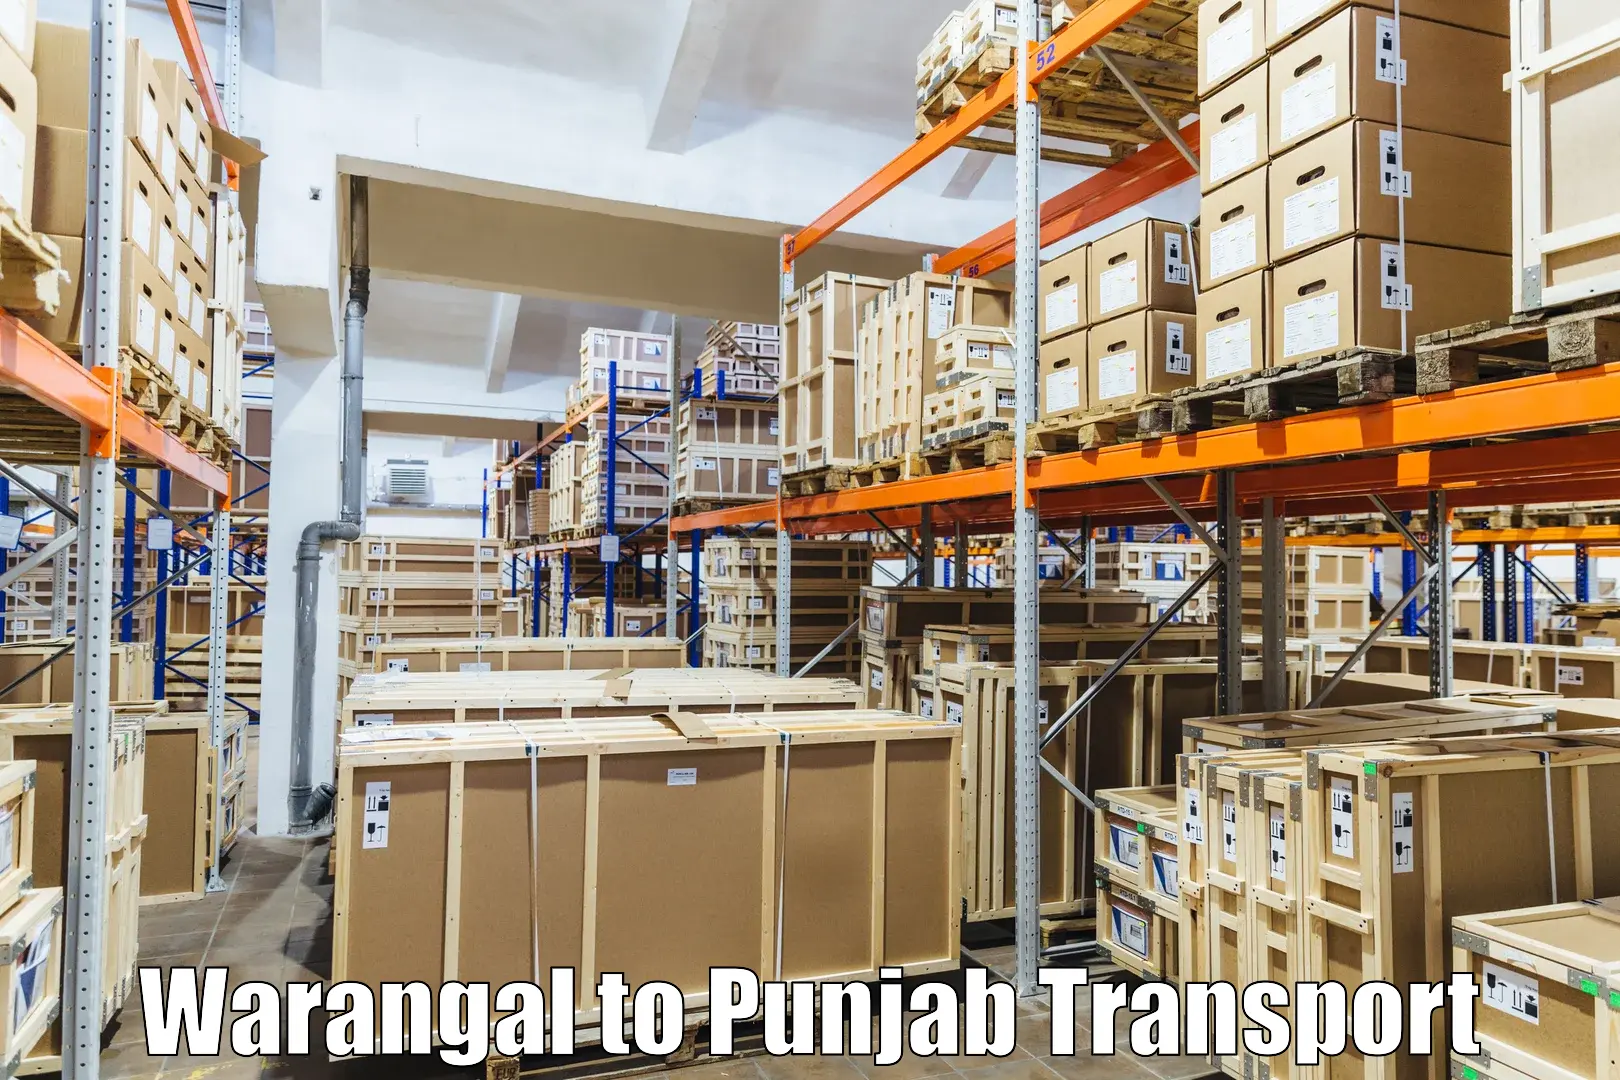 Nationwide transport services Warangal to Punjab